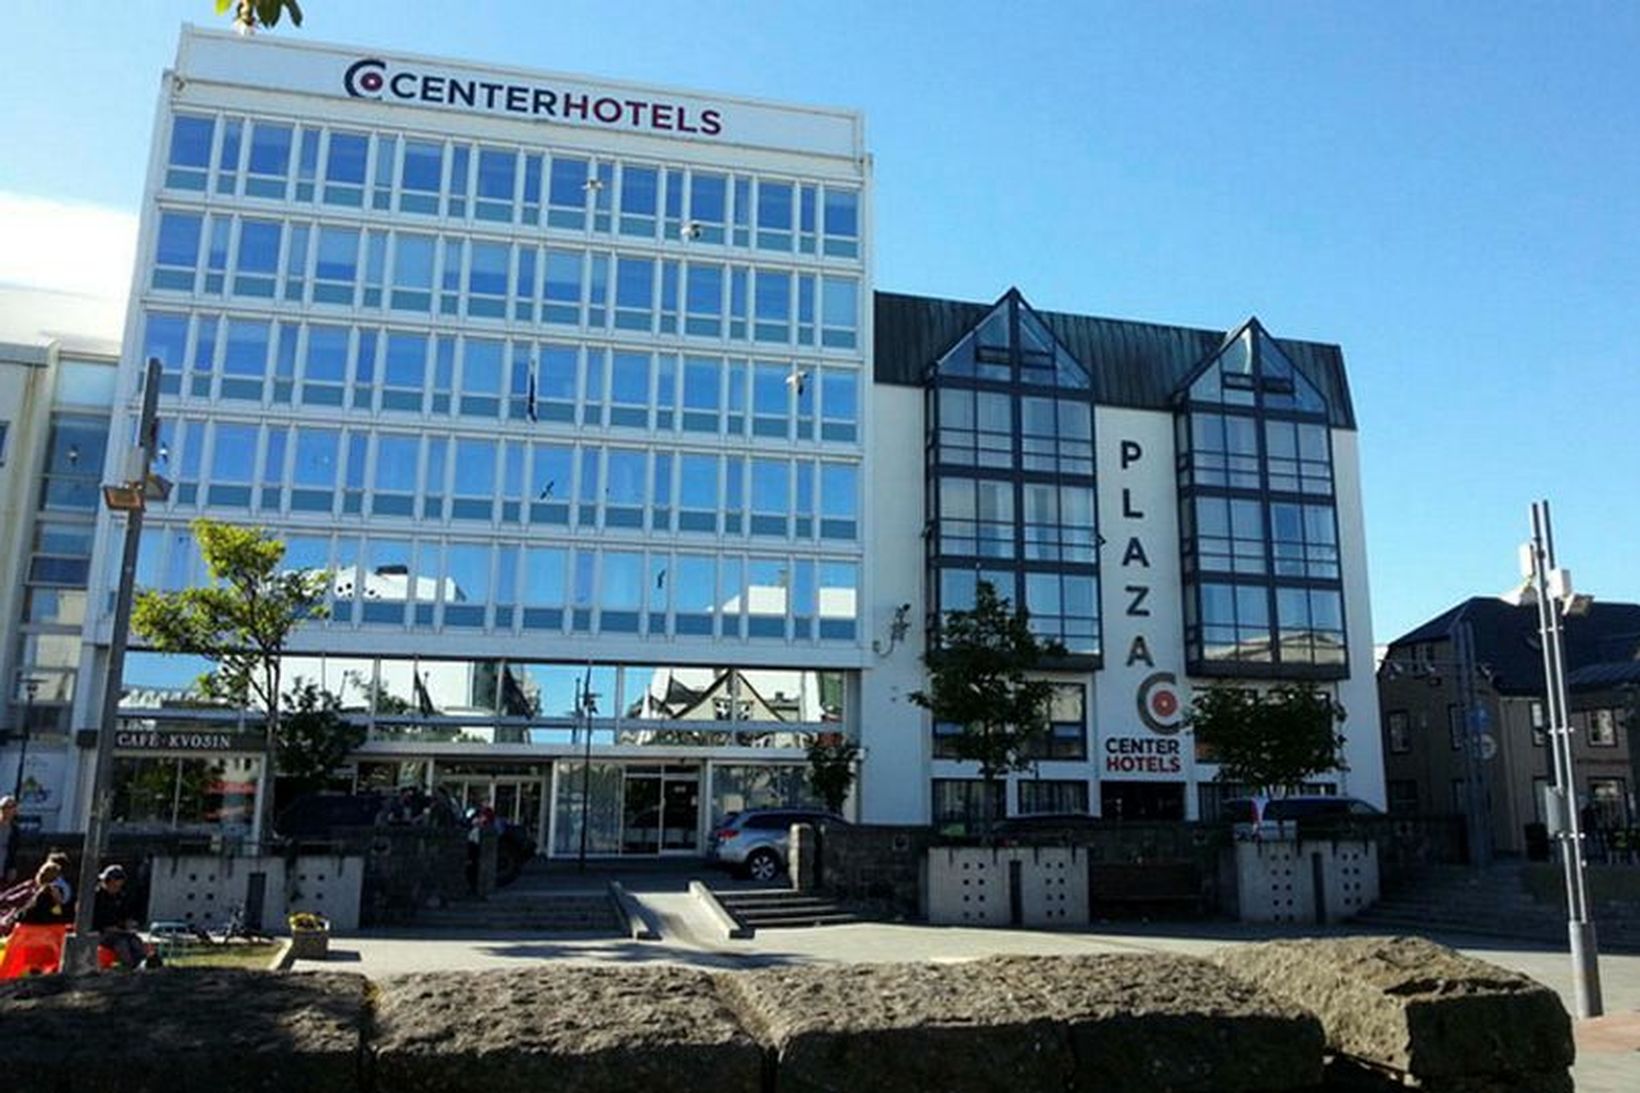 Centerhotels reka hótelið Plaza við Aðalstræti.